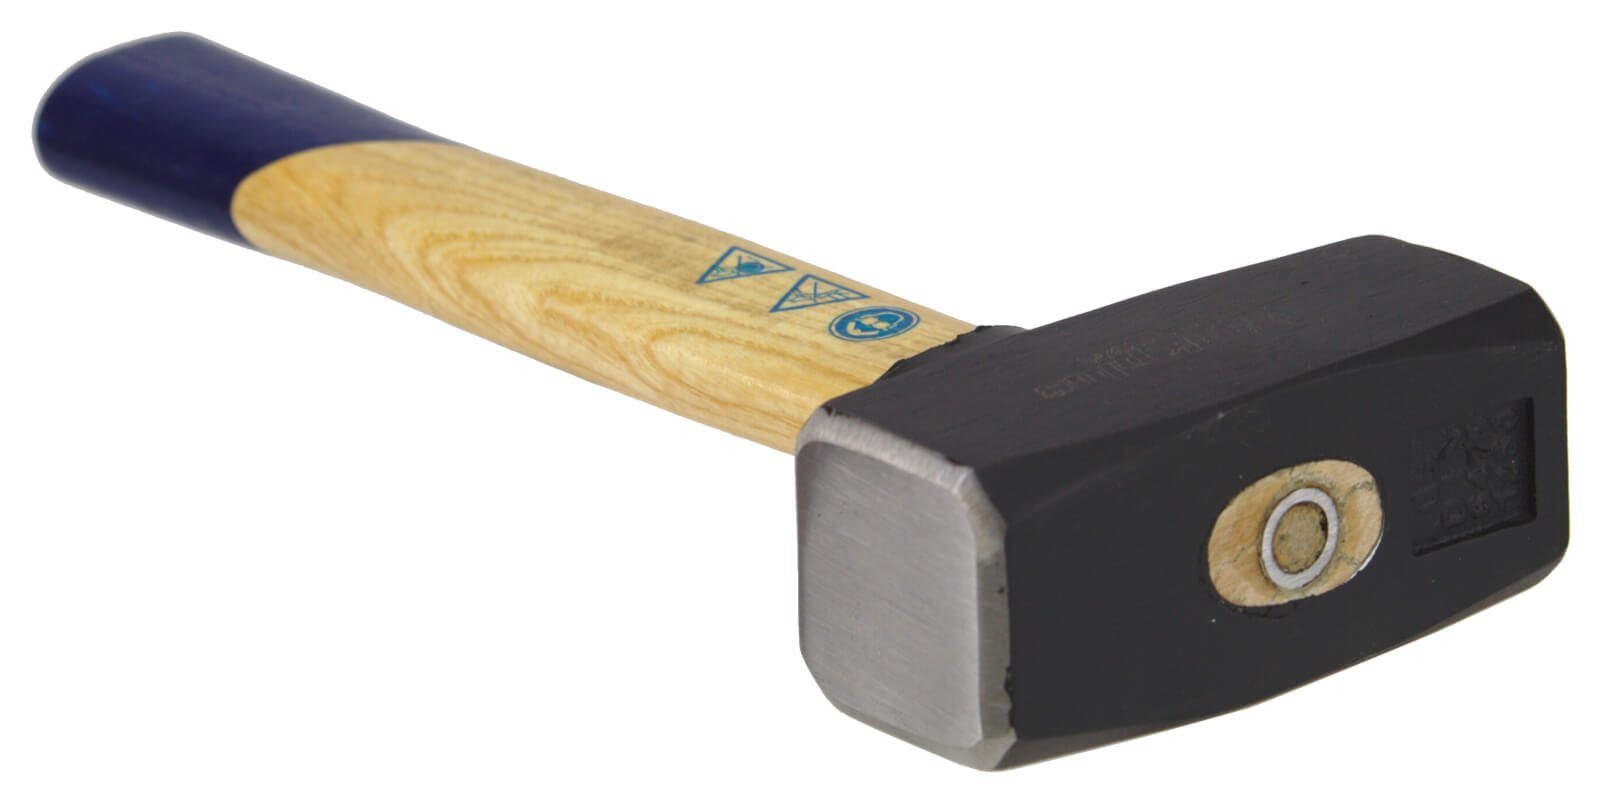 Fäustel g 1250 Hammer Hammer Holzstiel mit